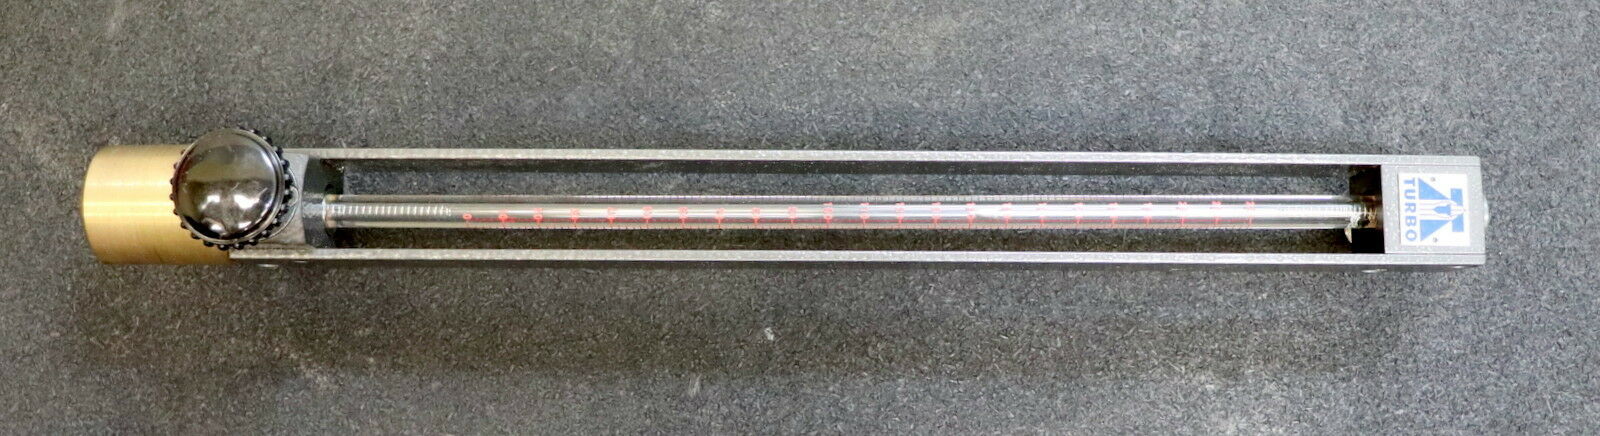 TURBO Labor-Durchflussmesser im Messkoffer mit Messzylindern + Schwebekörper